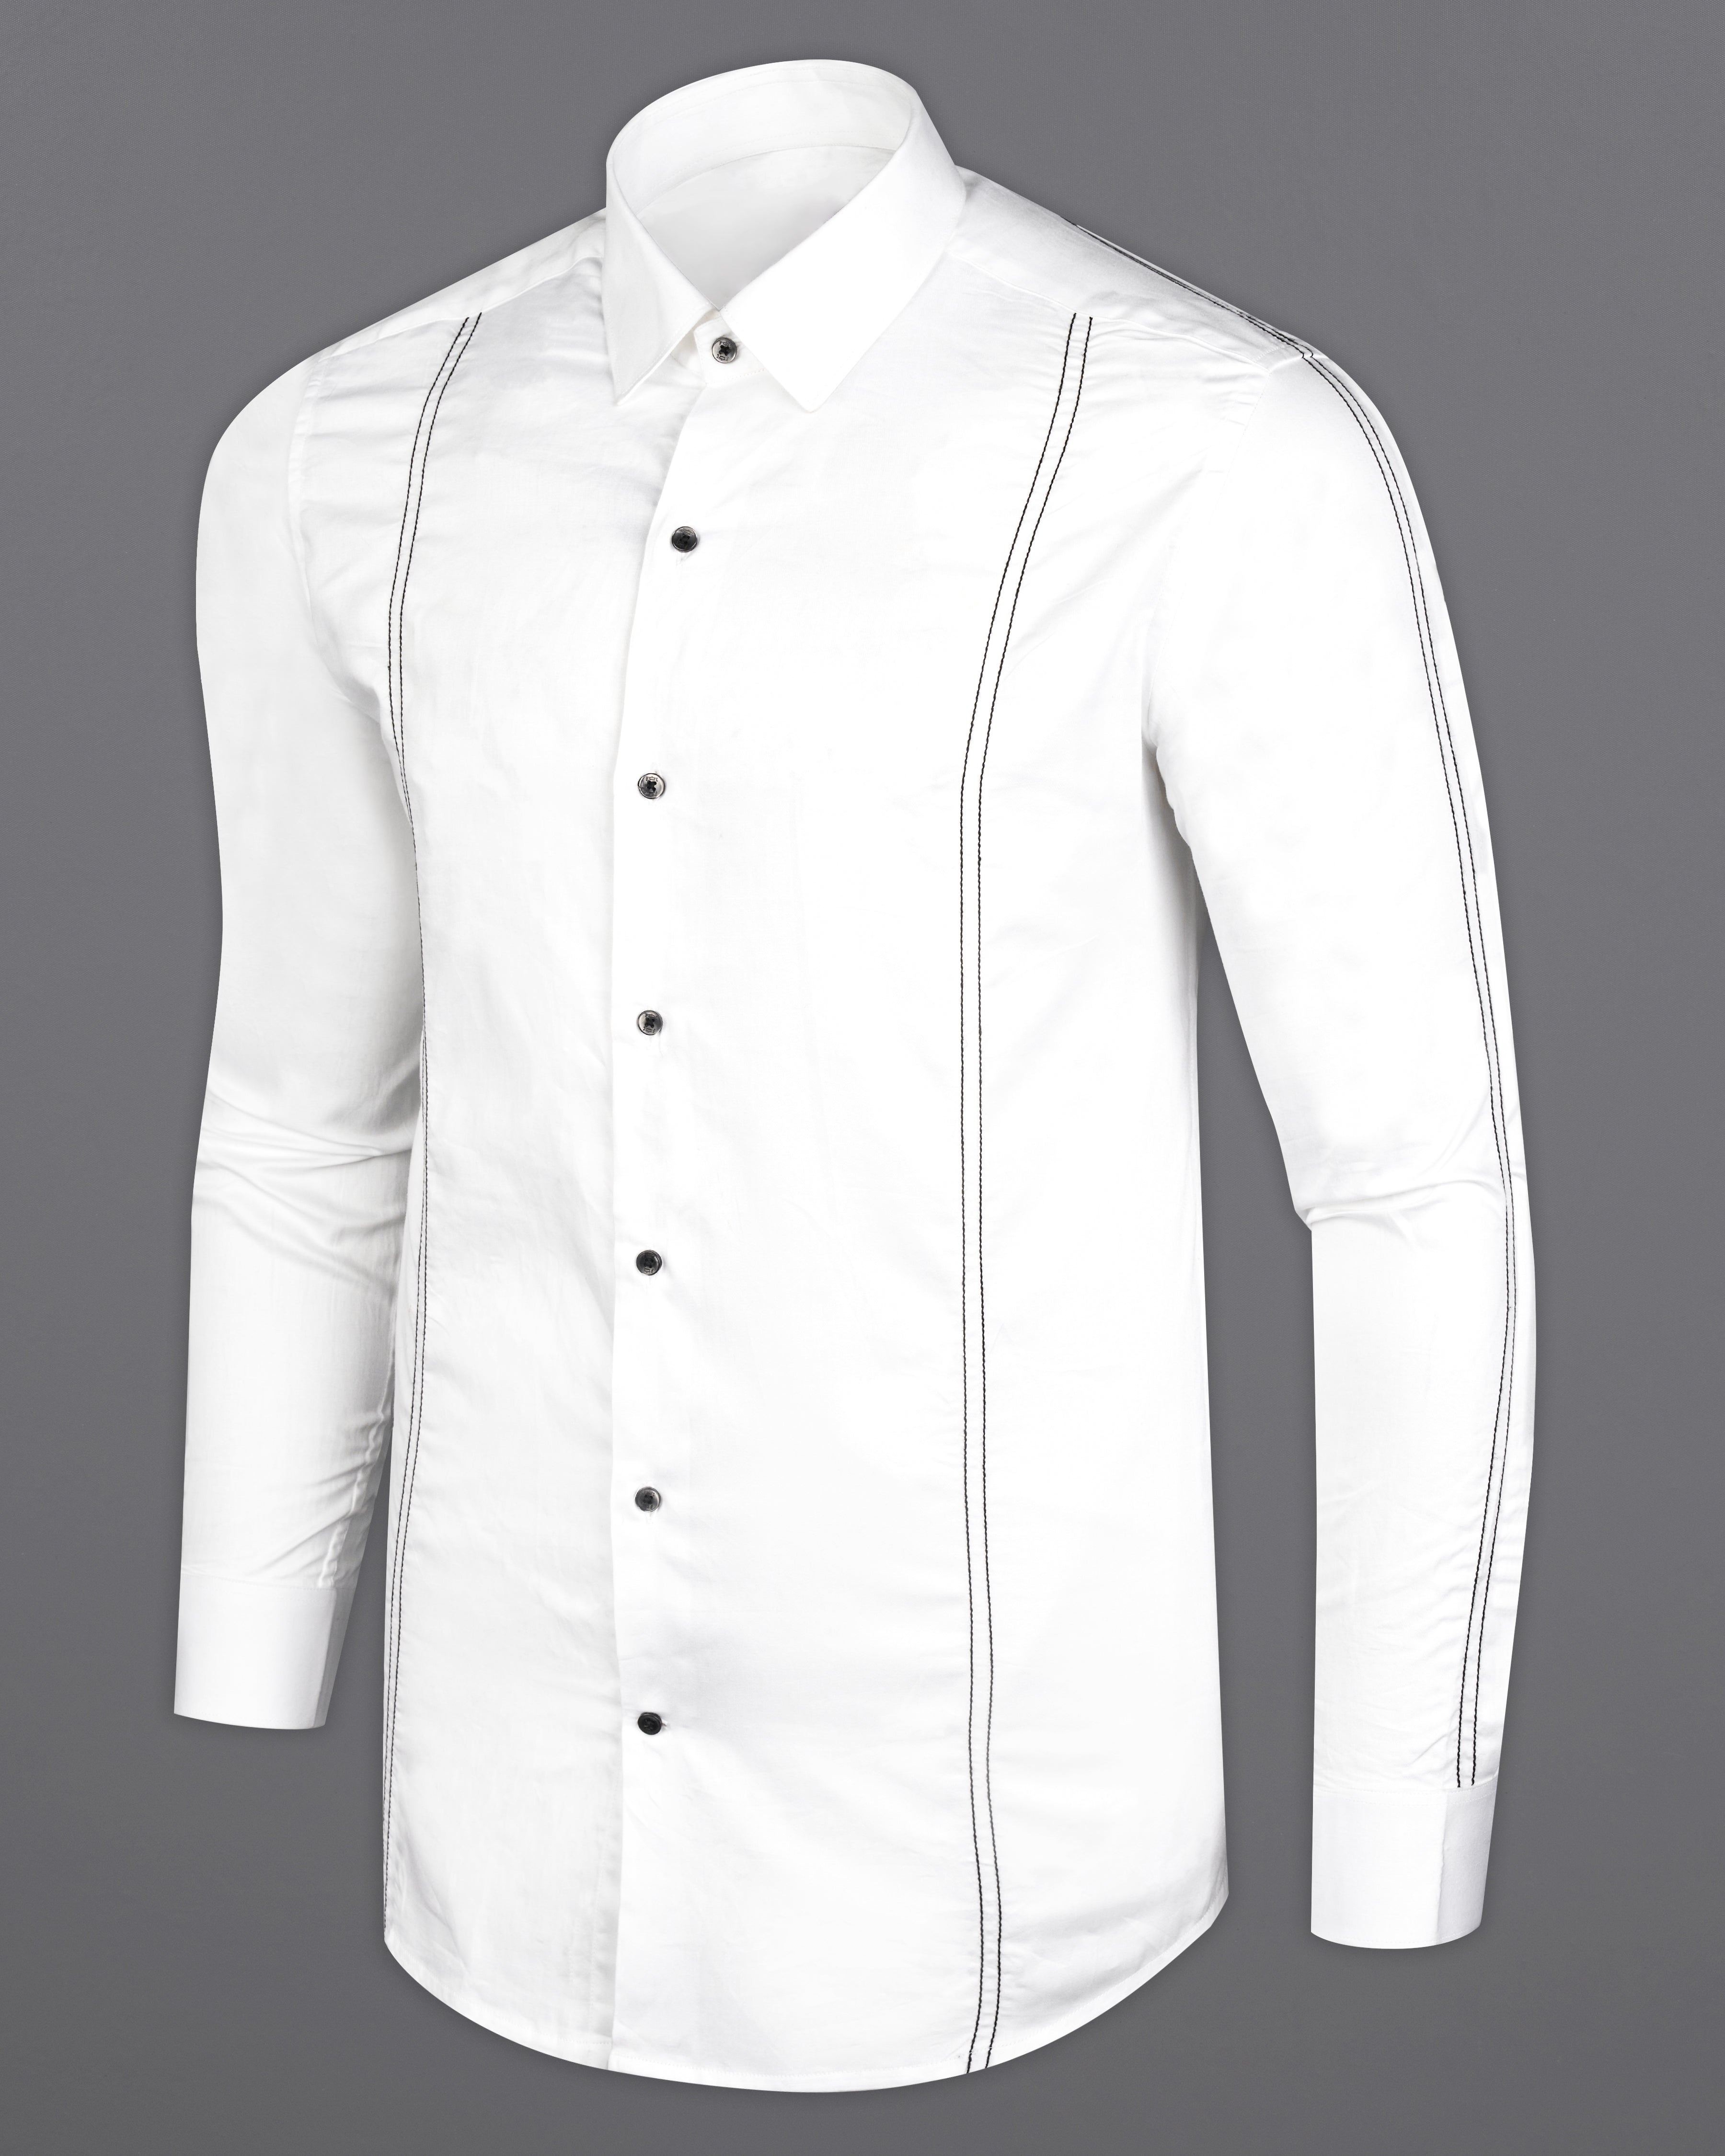 Bright White and Black Super Soft Premium Cotton Designer Shirt 9810-BLK-P626-38, 9810-BLK-P626-H-38, 9810-BLK-P626-39, 9810-BLK-P626-H-39, 9810-BLK-P626-40, 9810-BLK-P626-H-40, 9810-BLK-P626-42, 9810-BLK-P626-H-42, 9810-BLK-P626-44, 9810-BLK-P626-H-44, 9810-BLK-P626-46, 9810-BLK-P626-H-46, 9810-BLK-P626-48, 9810-BLK-P626-H-48, 9810-BLK-P626-50, 9810-BLK-P626-H-50, 9810-BLK-P626-52, 9810-BLK-P626-H-52 